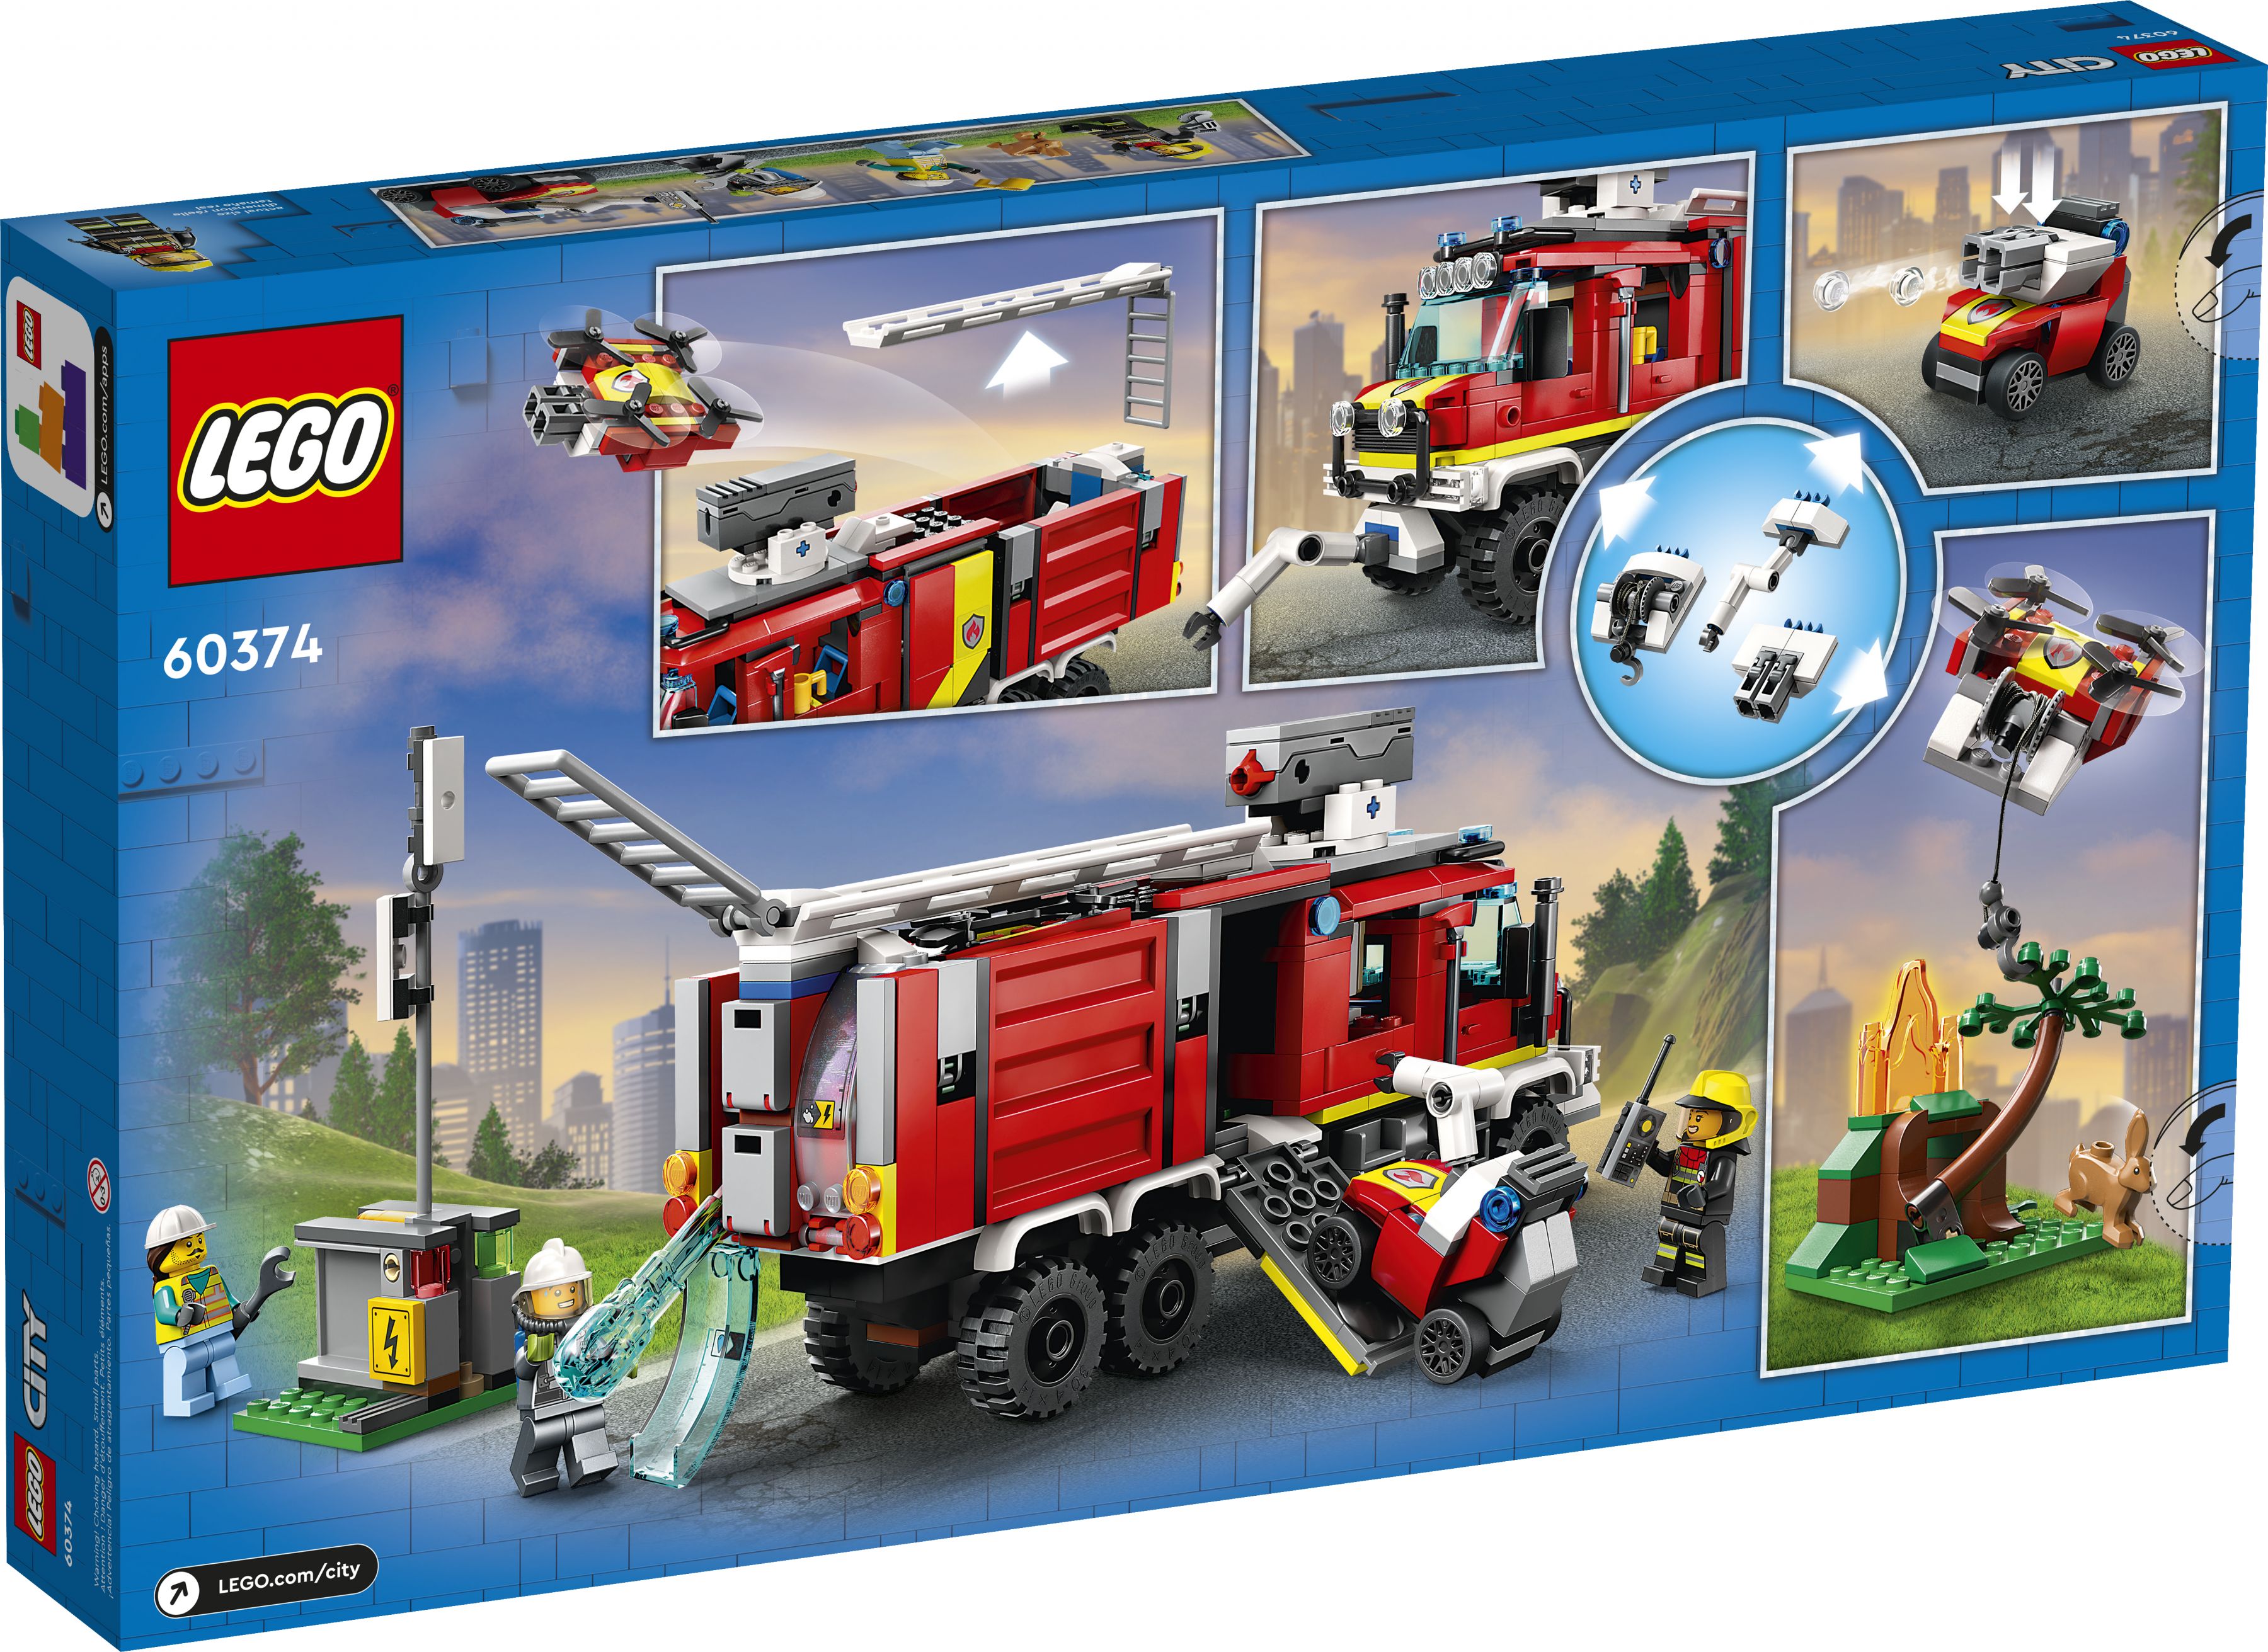 LEGO City 60374 Einsatzleitwagen der Feuerwehr LEGO_60374_Box5_v39.jpg